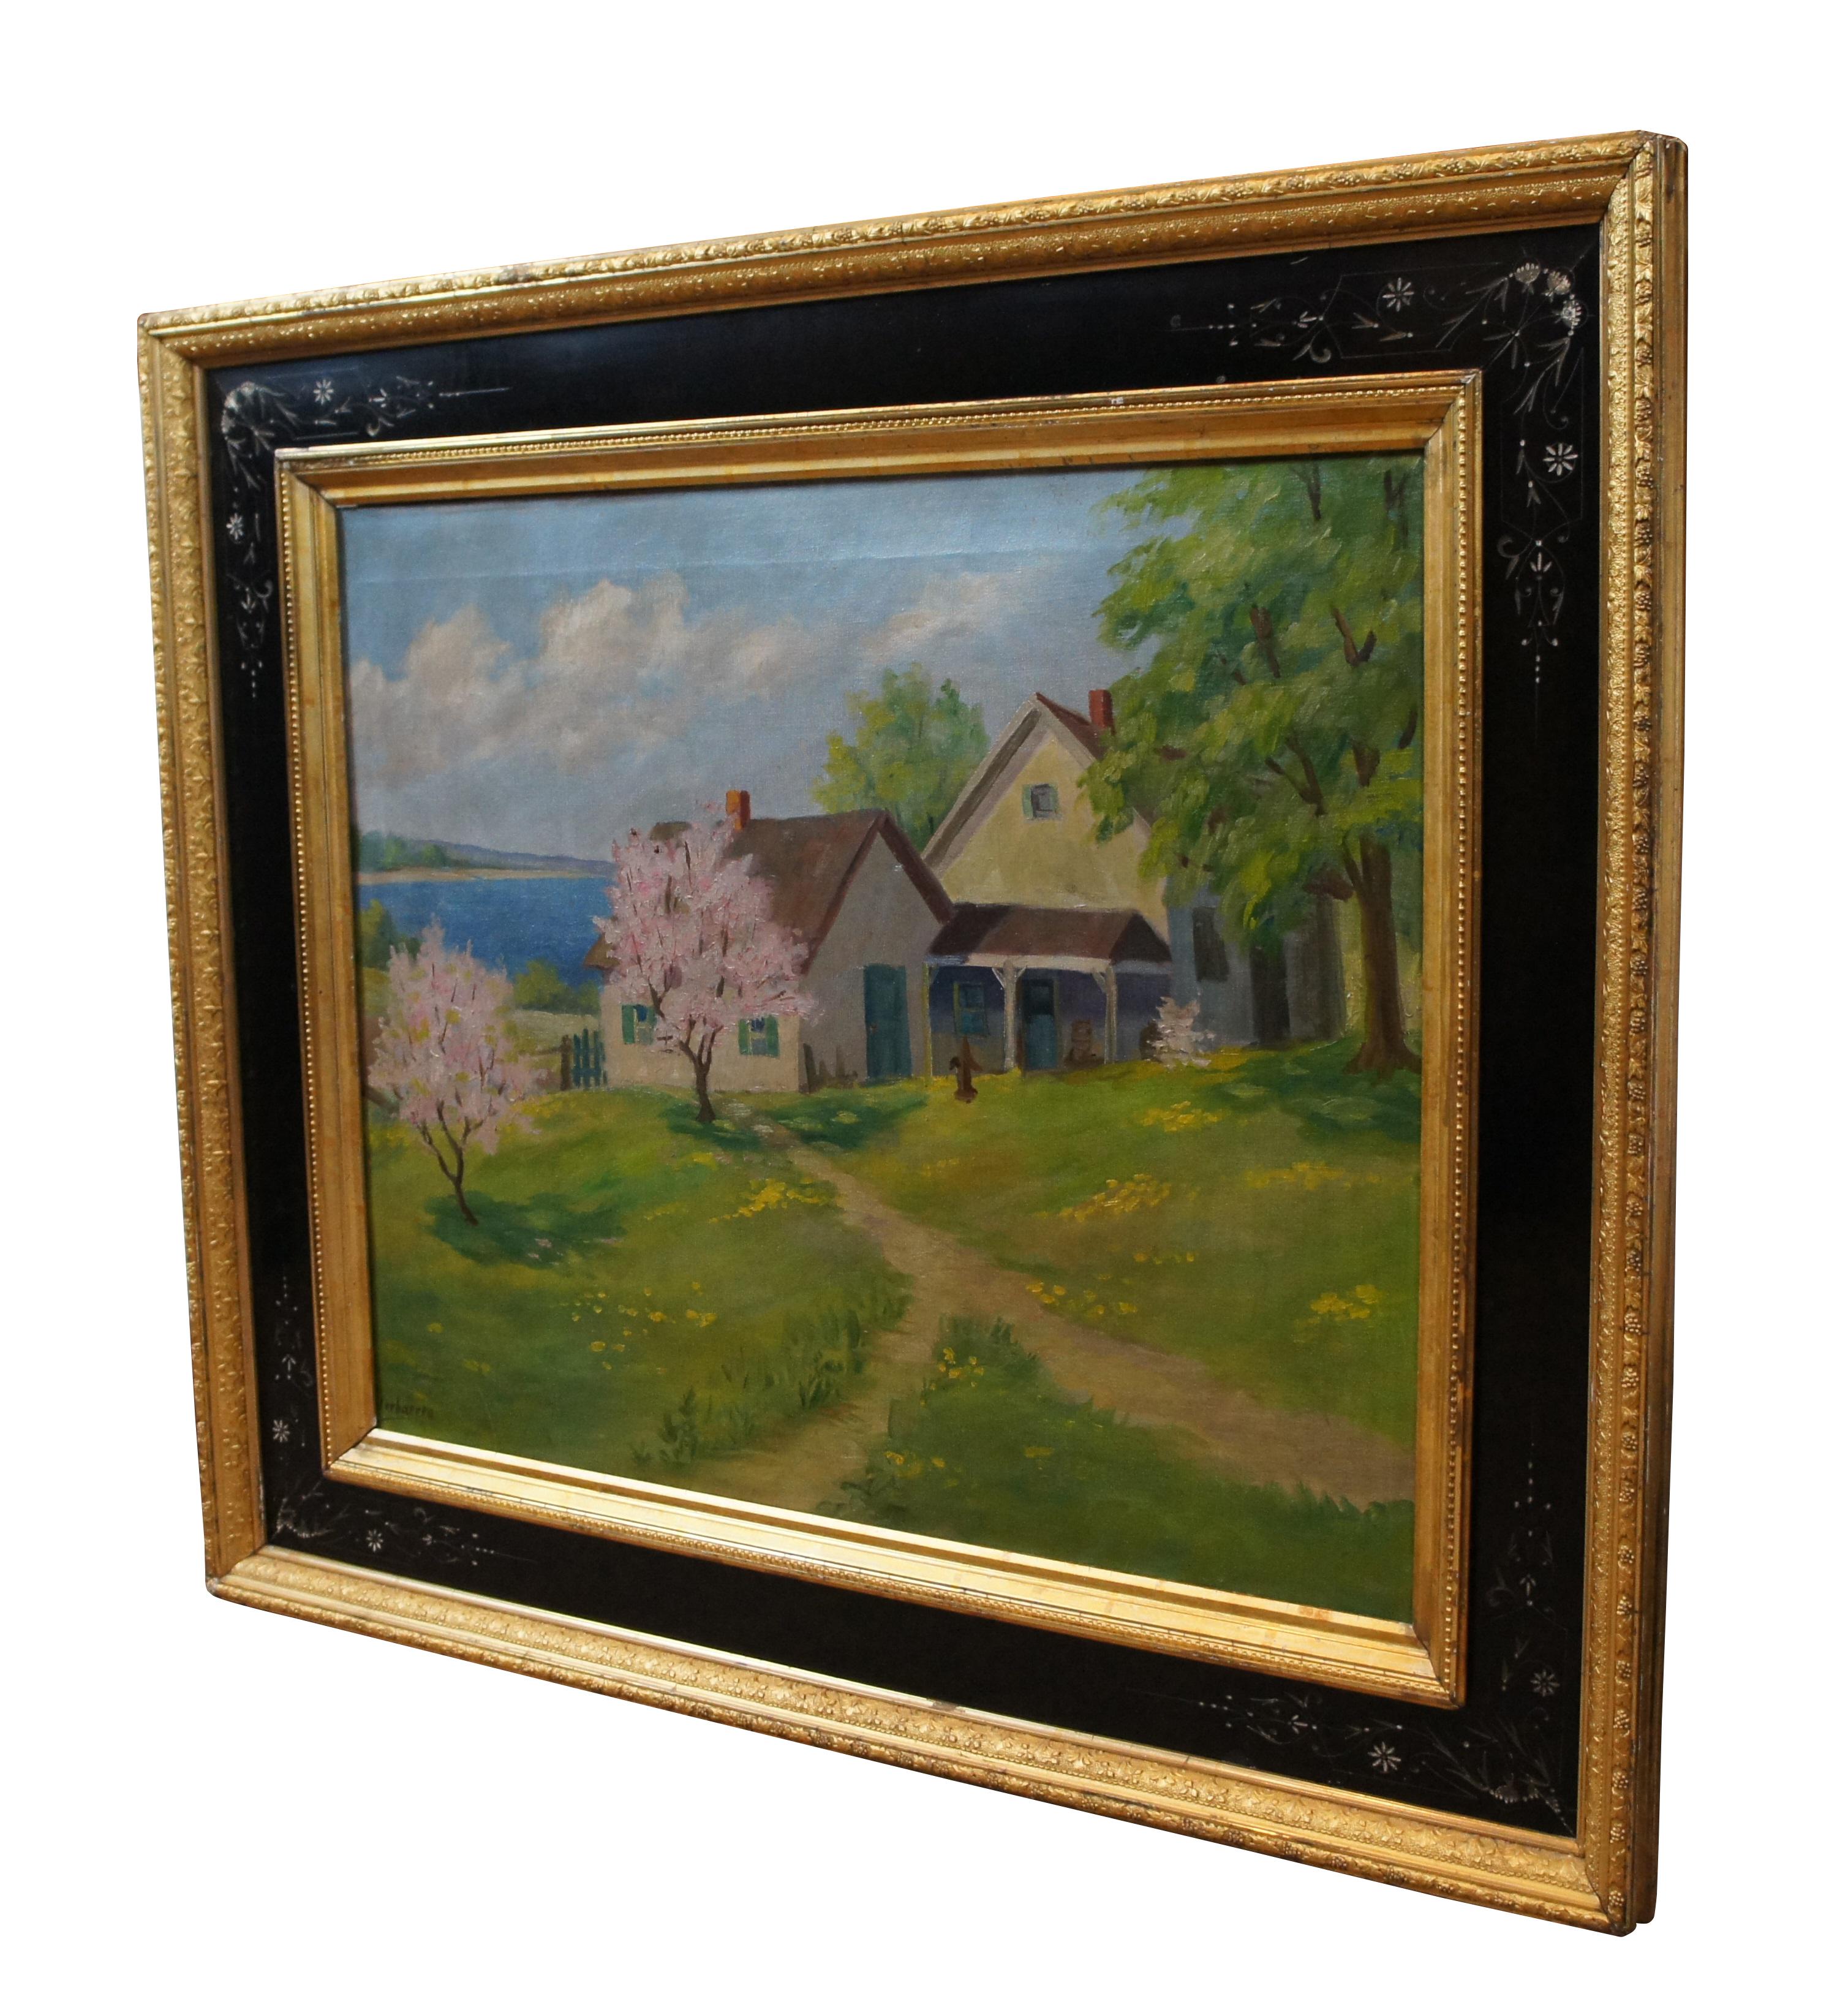 Vintage Carolus Verhaeren peinture à l'huile sur toile représentant une scène de paysage côtier avec des montagnes, de l'eau et une maison / cottage.  Encadré Cadre esthétique doré et ébonisé d'époque.

Né à Anvers, en Belgique, le 18 juin 1908.